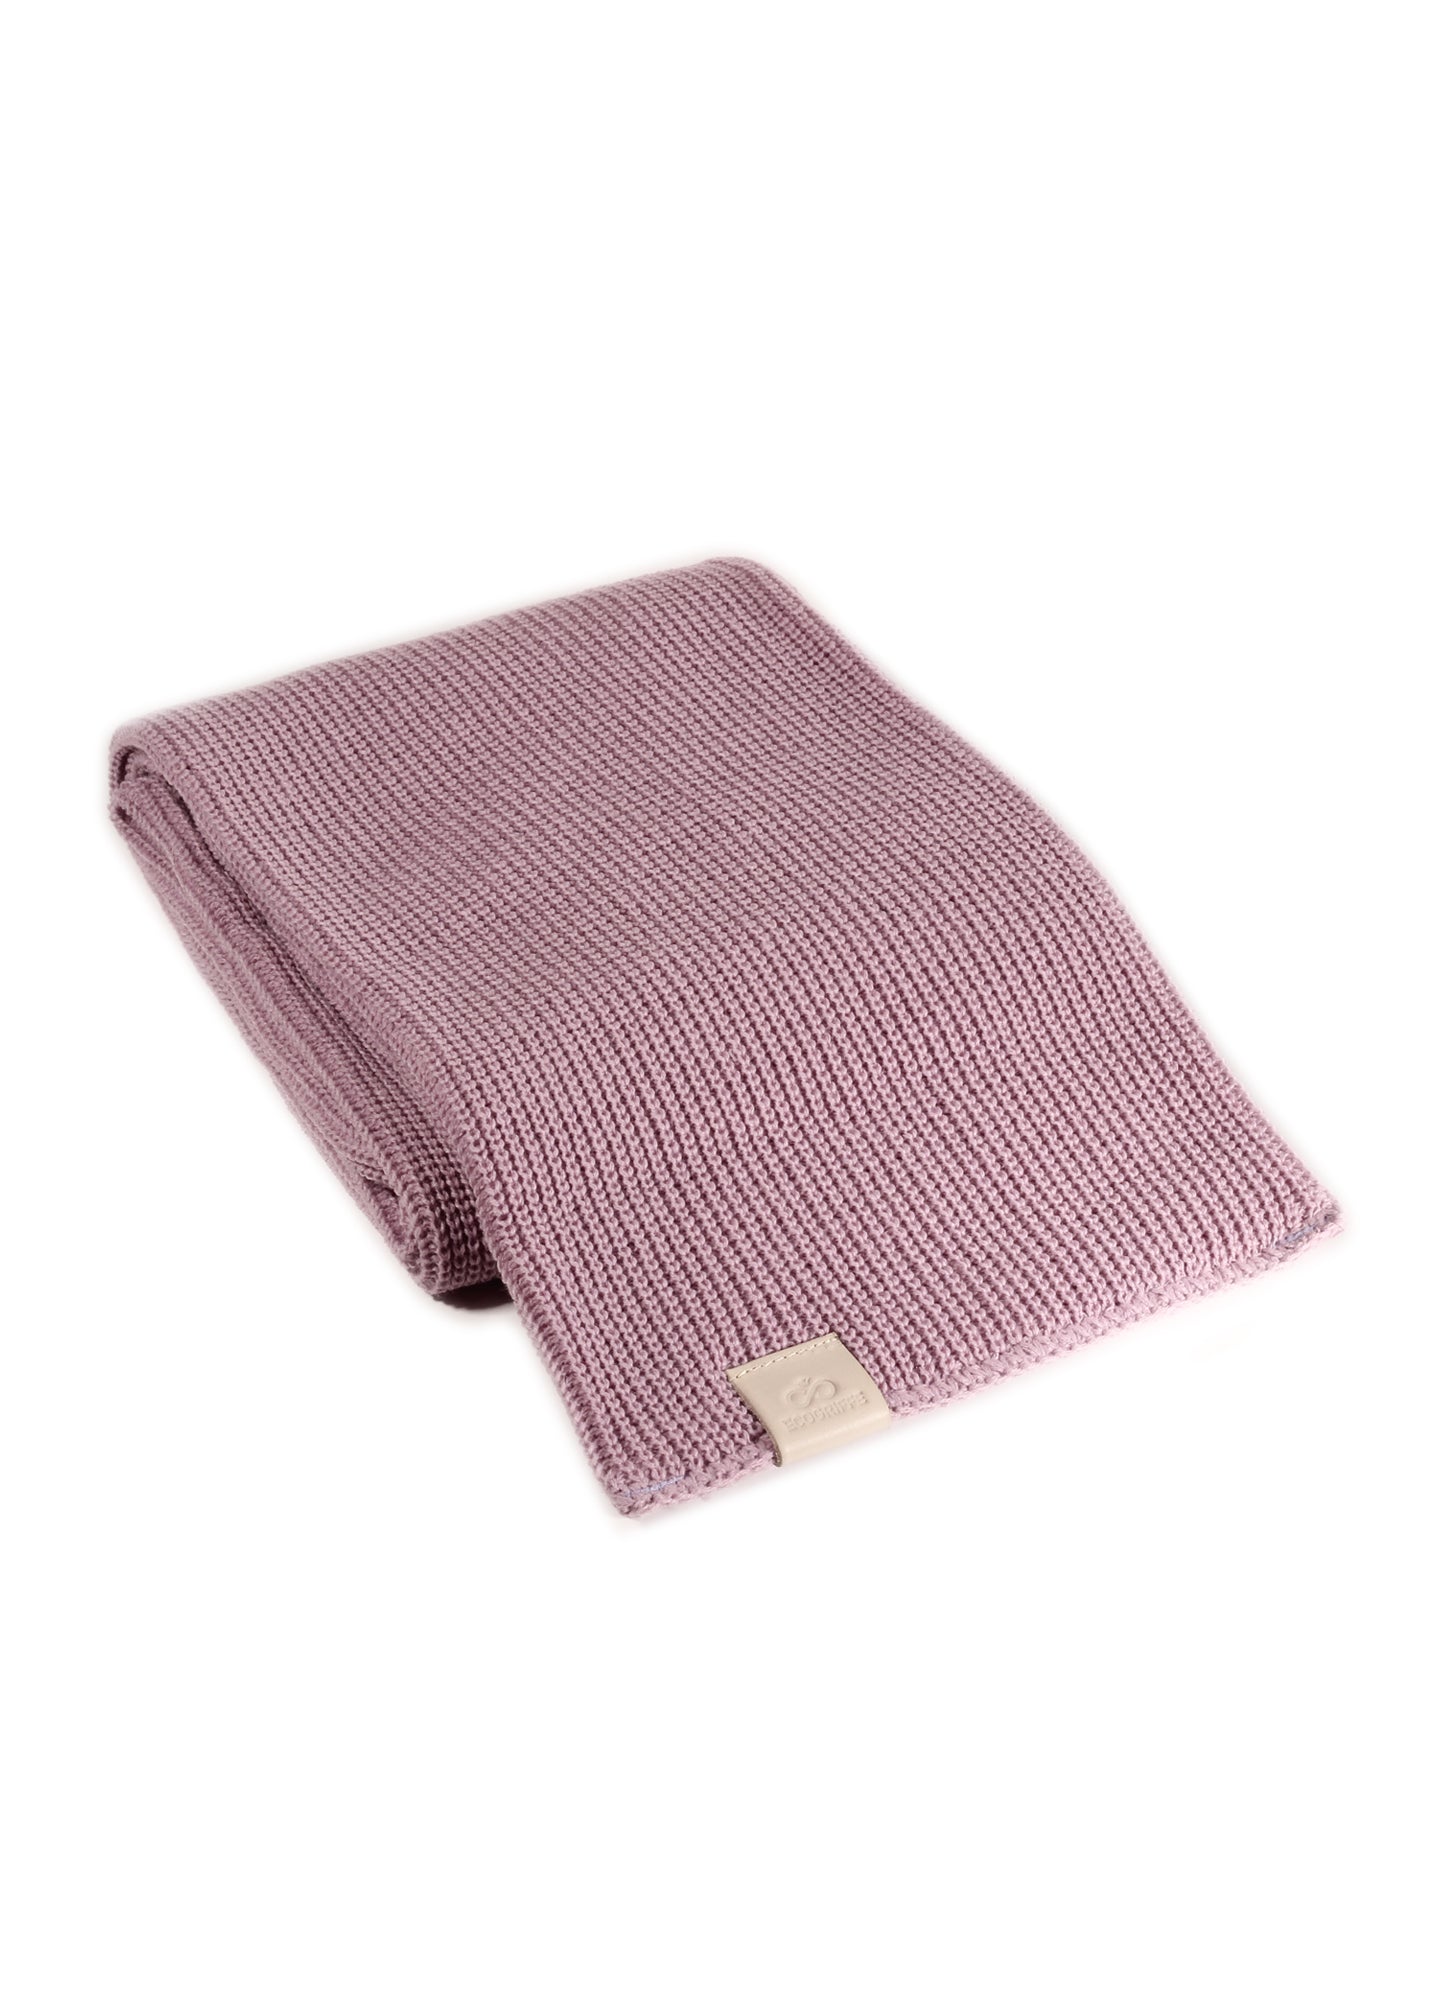 ecogriffe-foulard-lavande-etiquette-pale